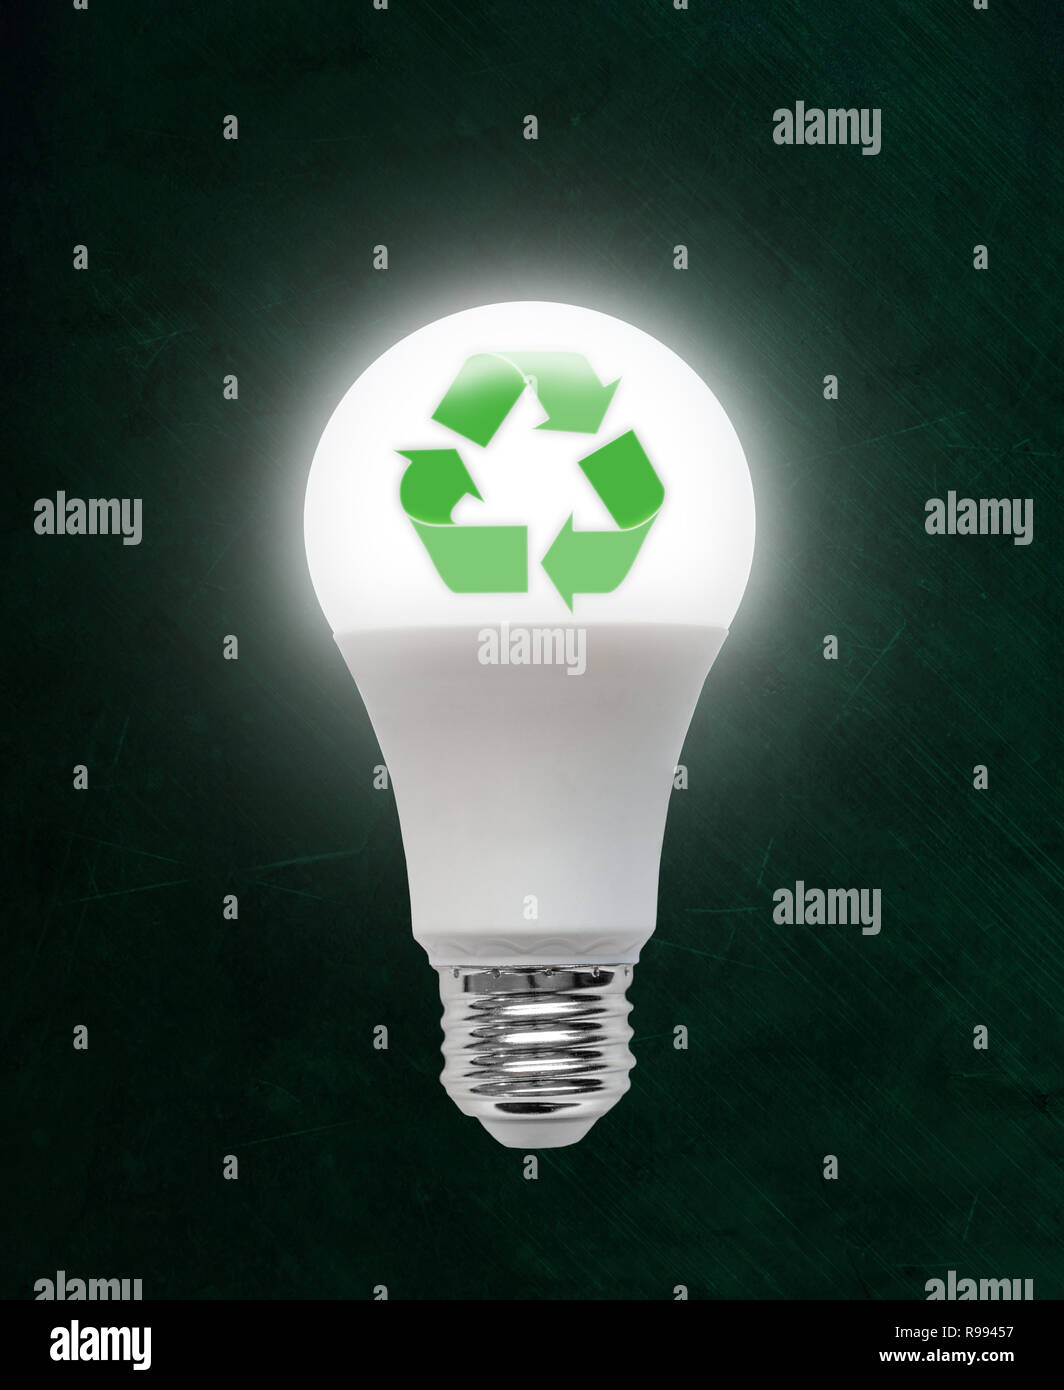 Efficace de l'énergie lumineuse Light Emitting Diode LED avec symbole de recyclage à l'intérieur. Concept de l'écologie, la préservation de l'environnement ; un vert Banque D'Images